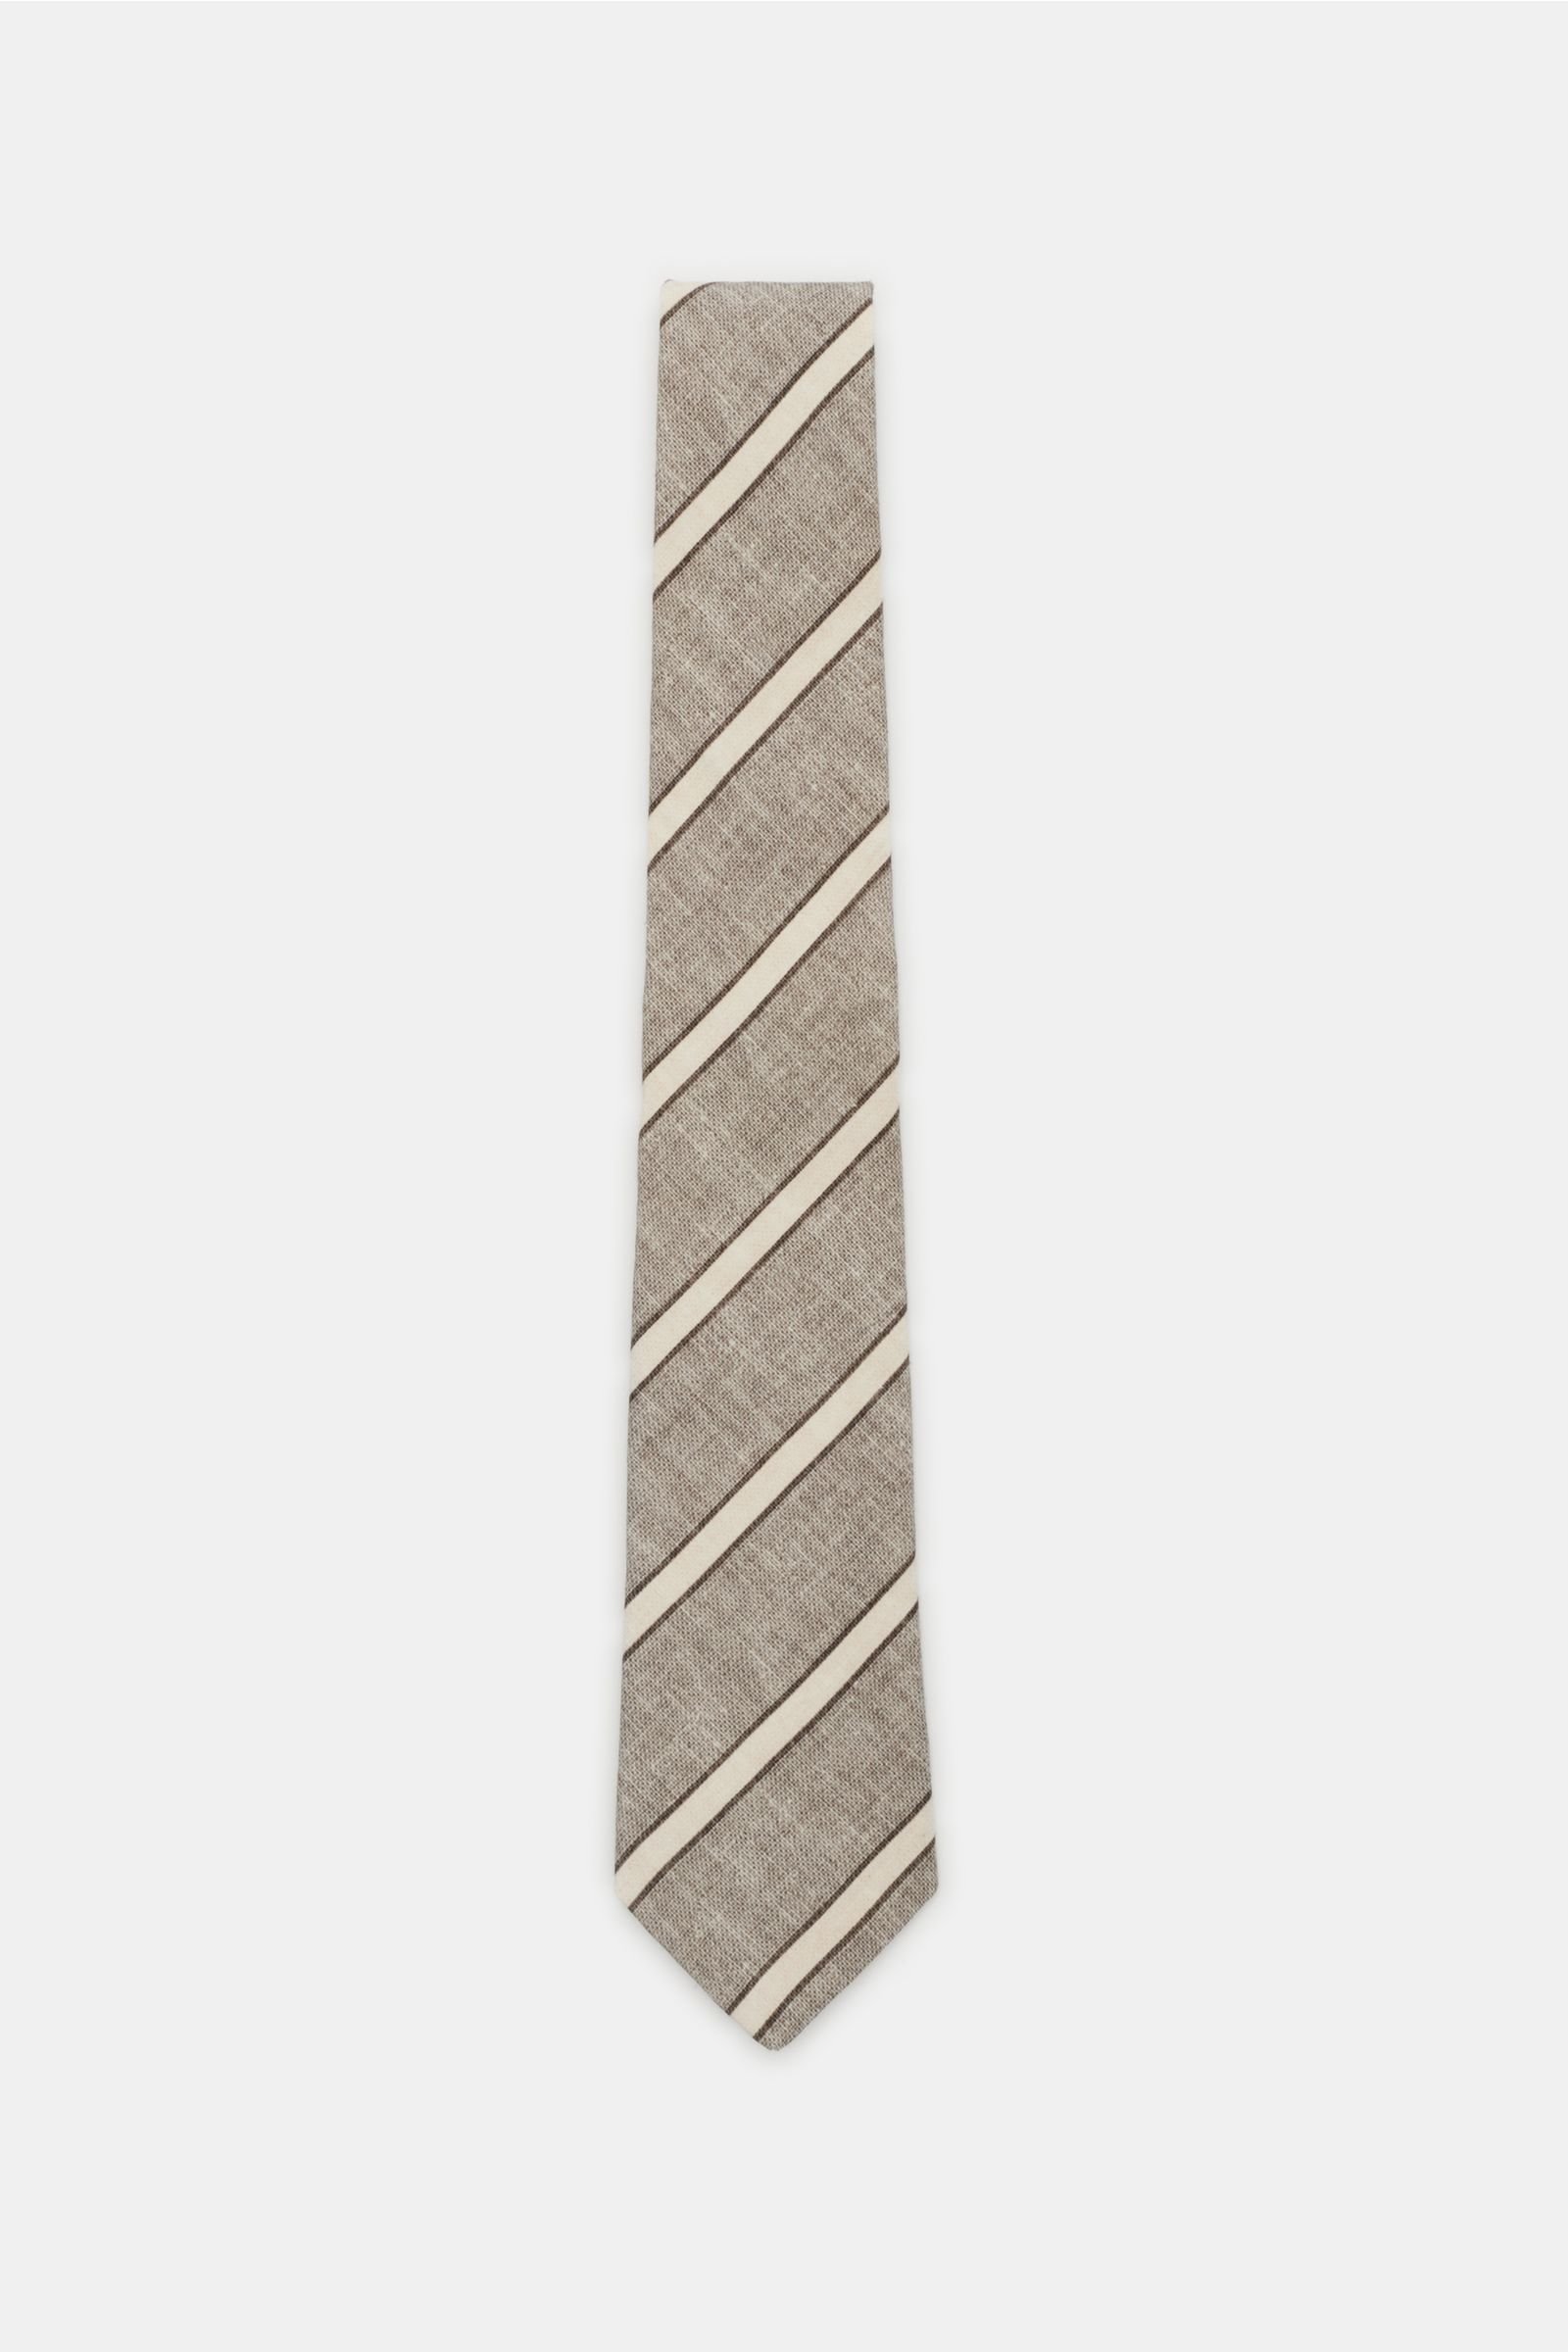 Tie grey-brown/beige striped